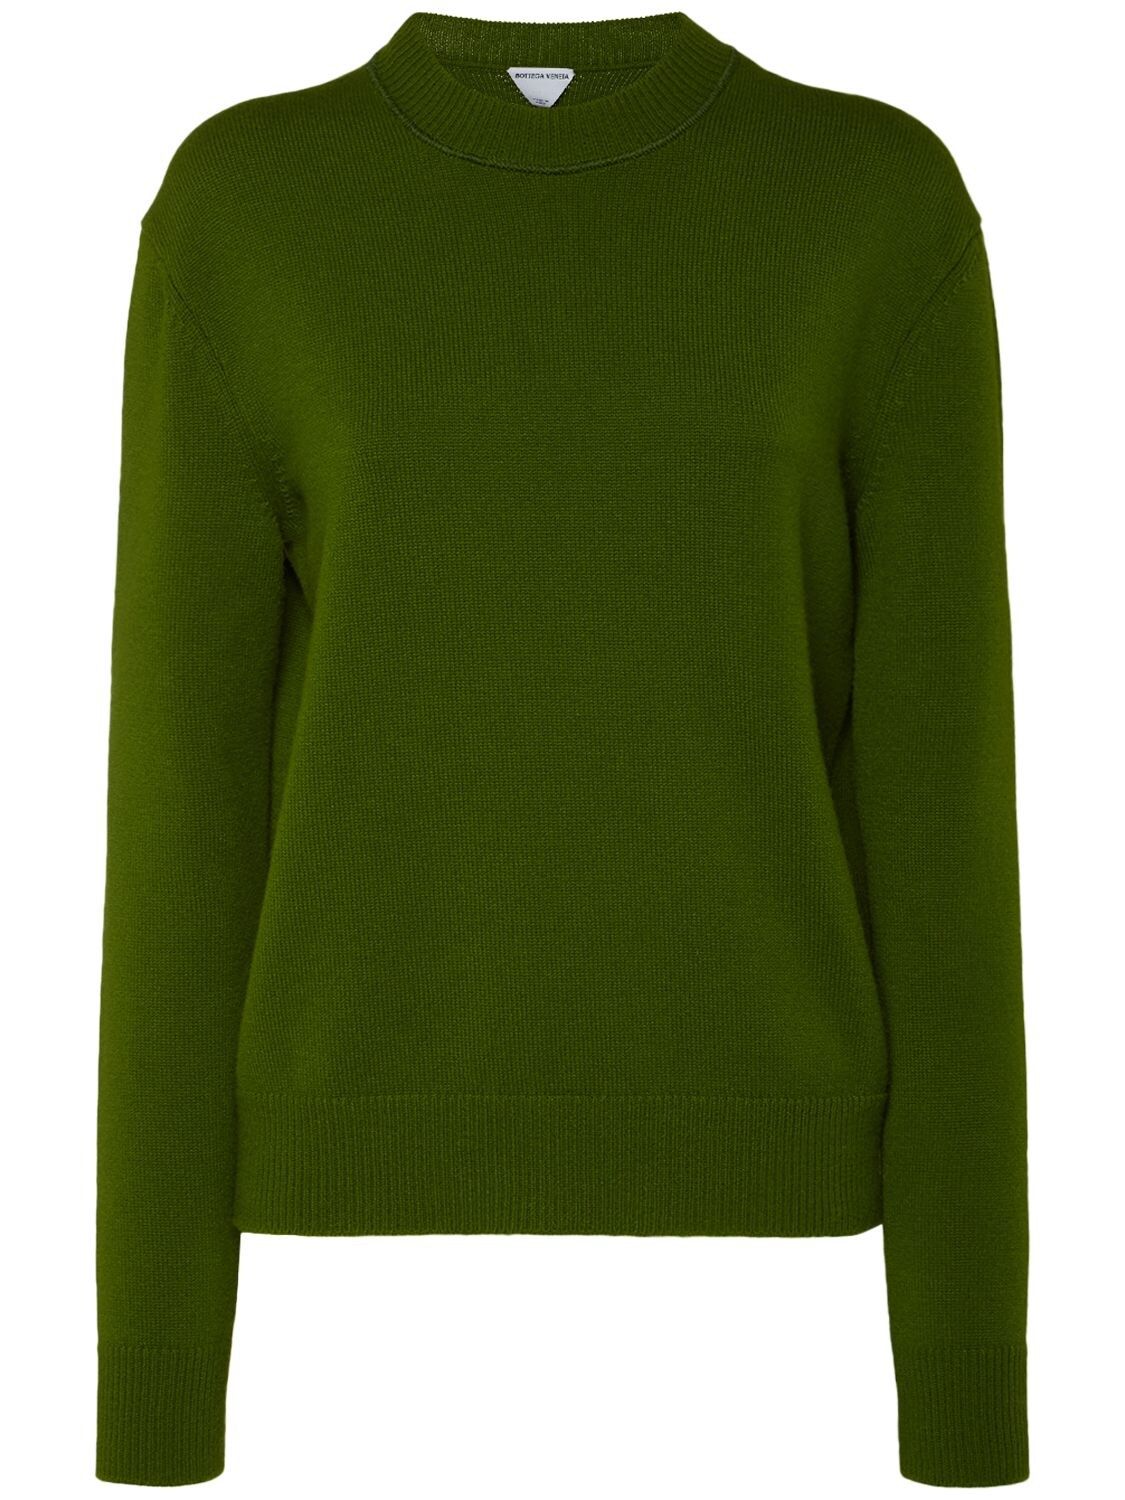 Bottega Veneta - Cashmere crewneck sweater - Jalapeno | Luisaviaroma | Luisaviaroma